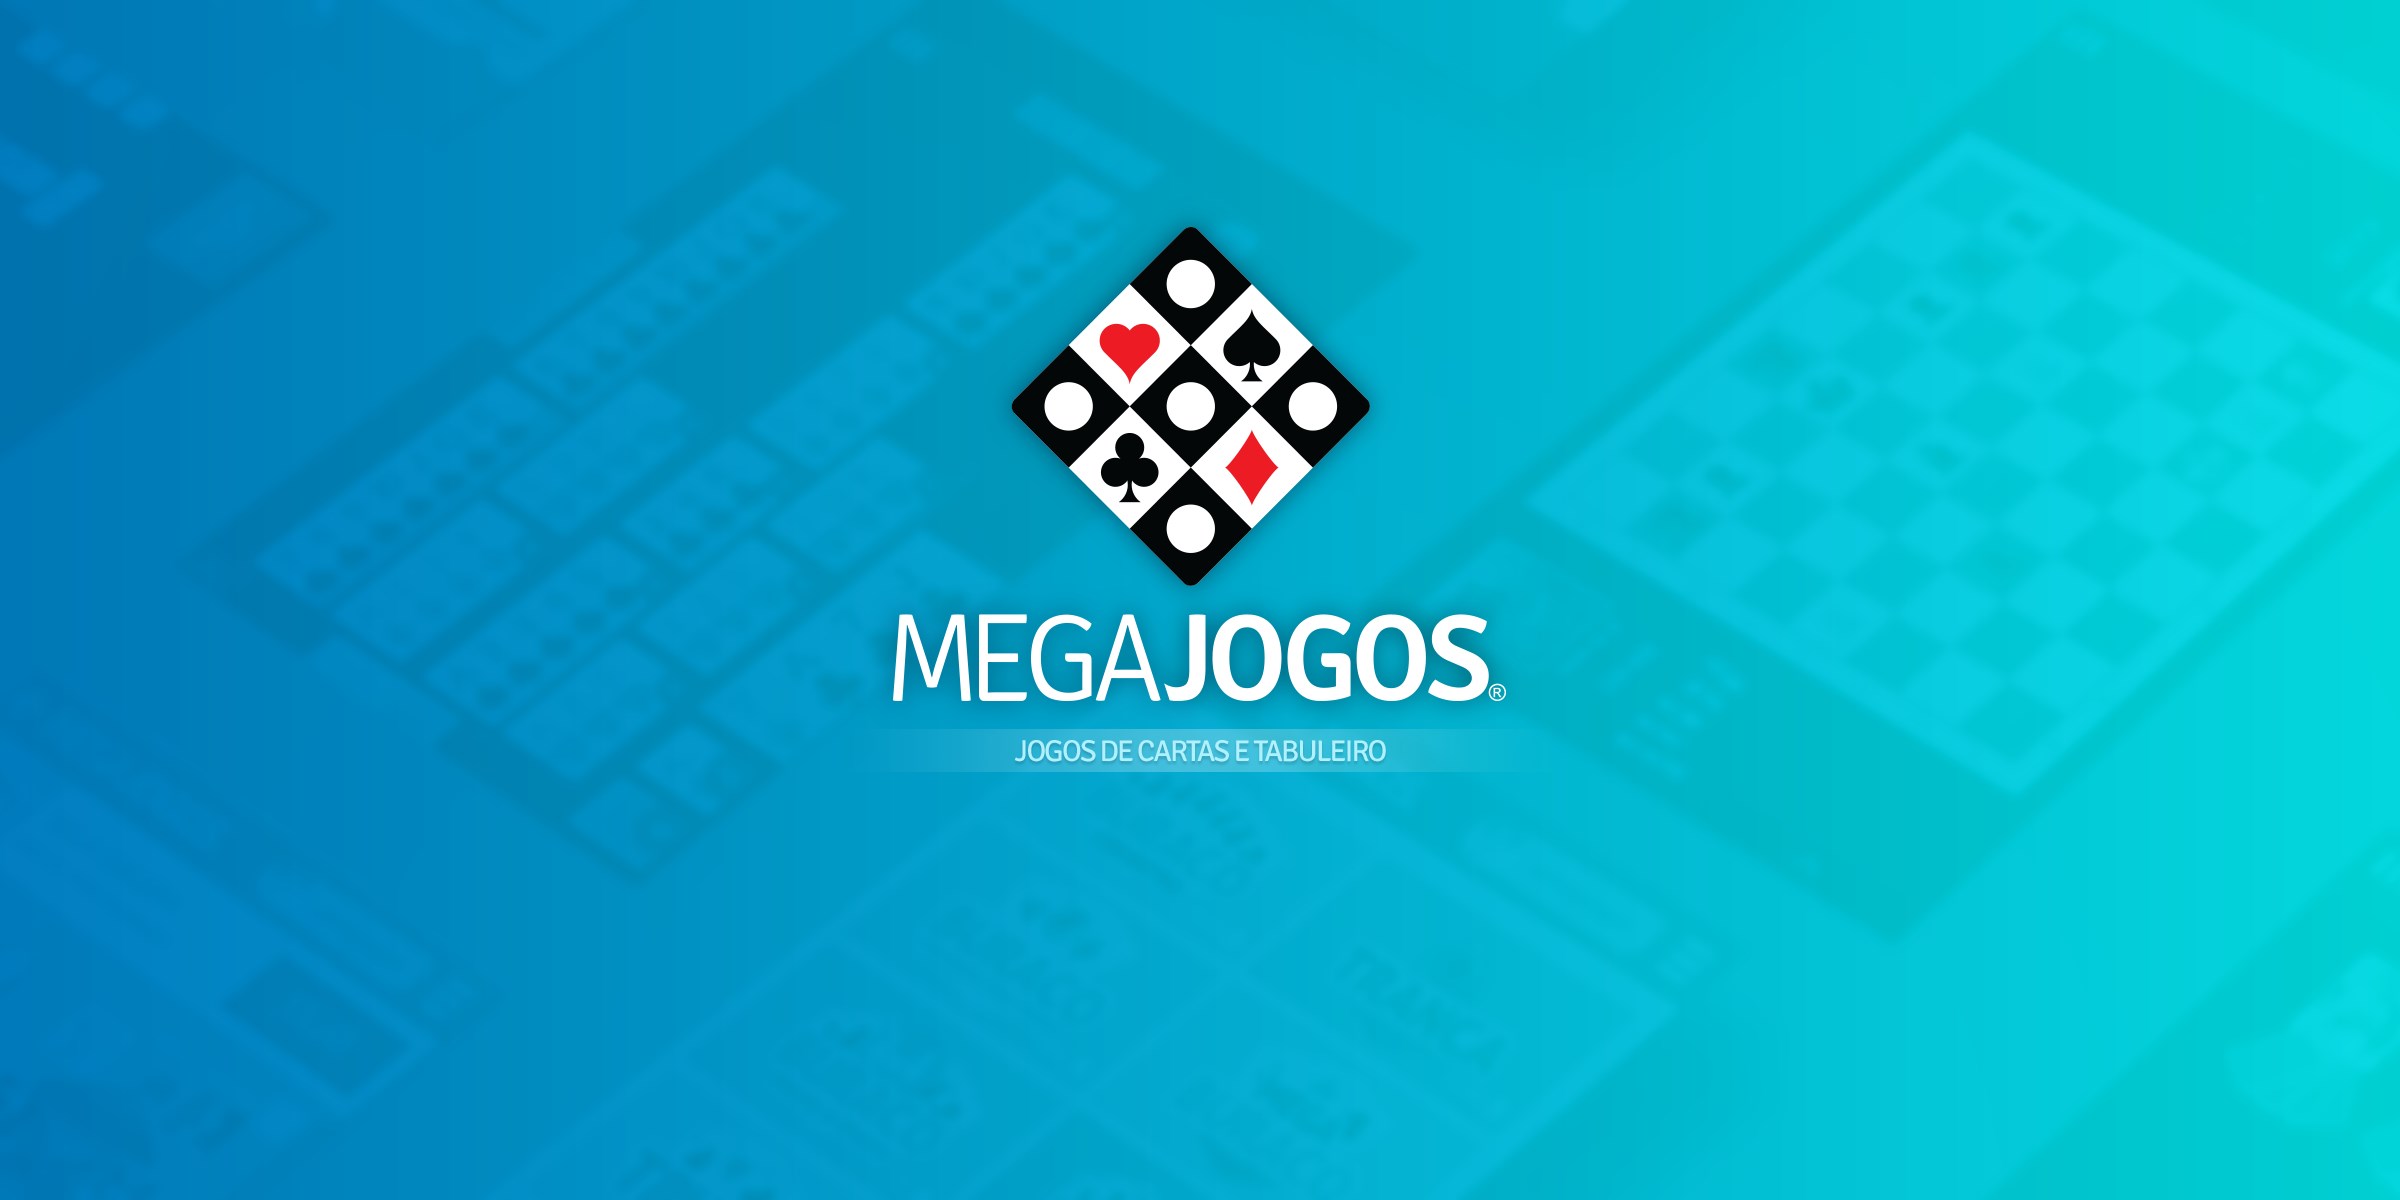 Poker Fechado by Megajogos Entretenimento Ltda